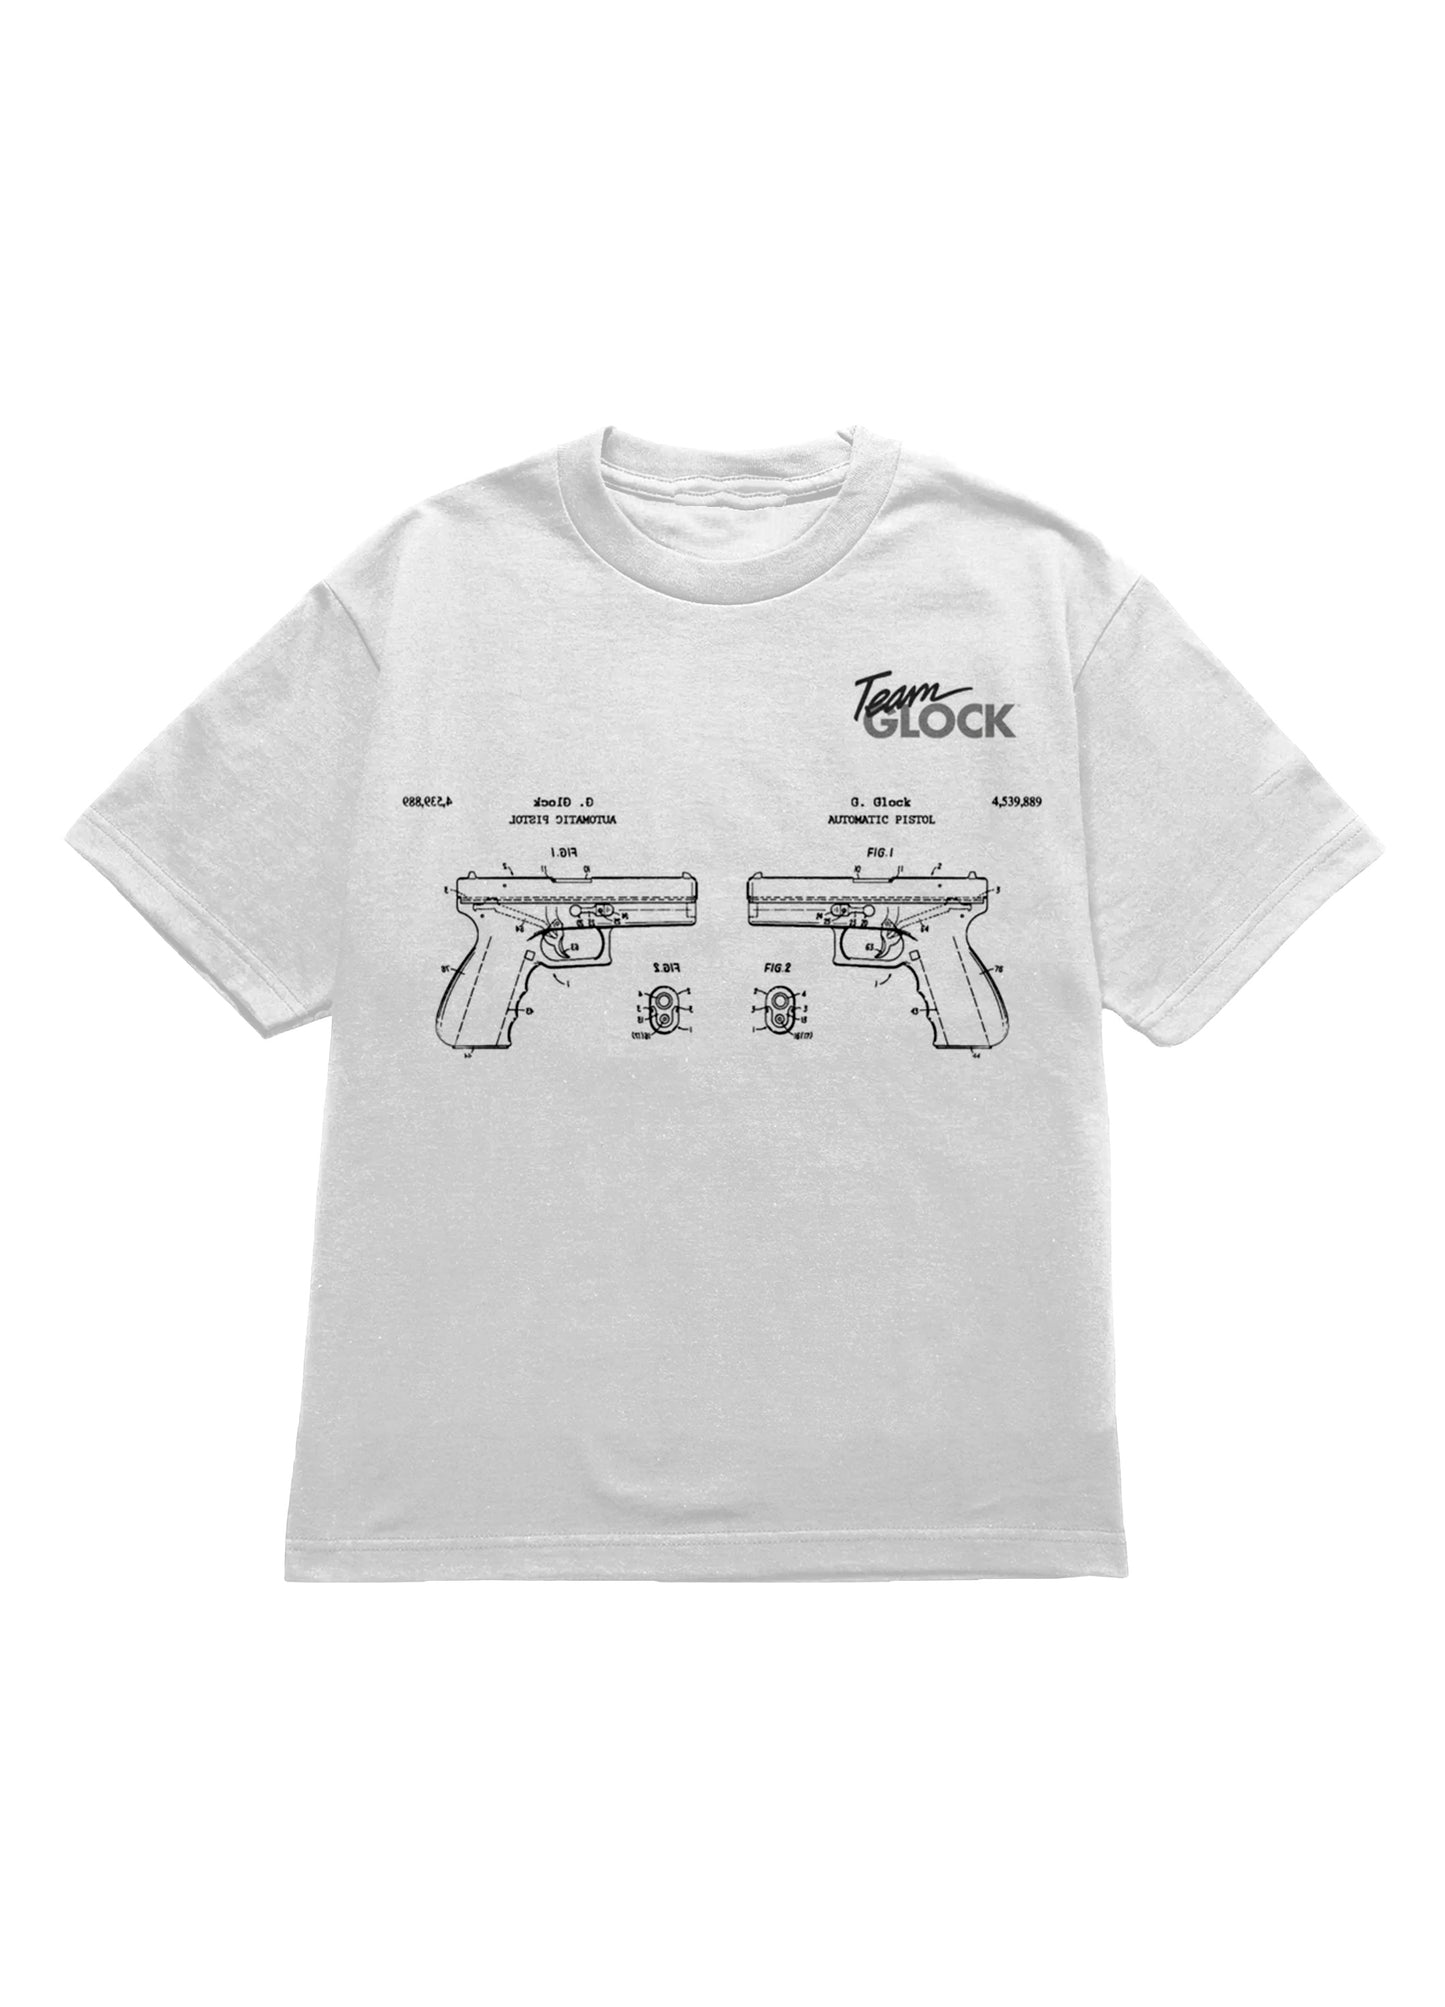 Gun Shop CAD T-Shirt White